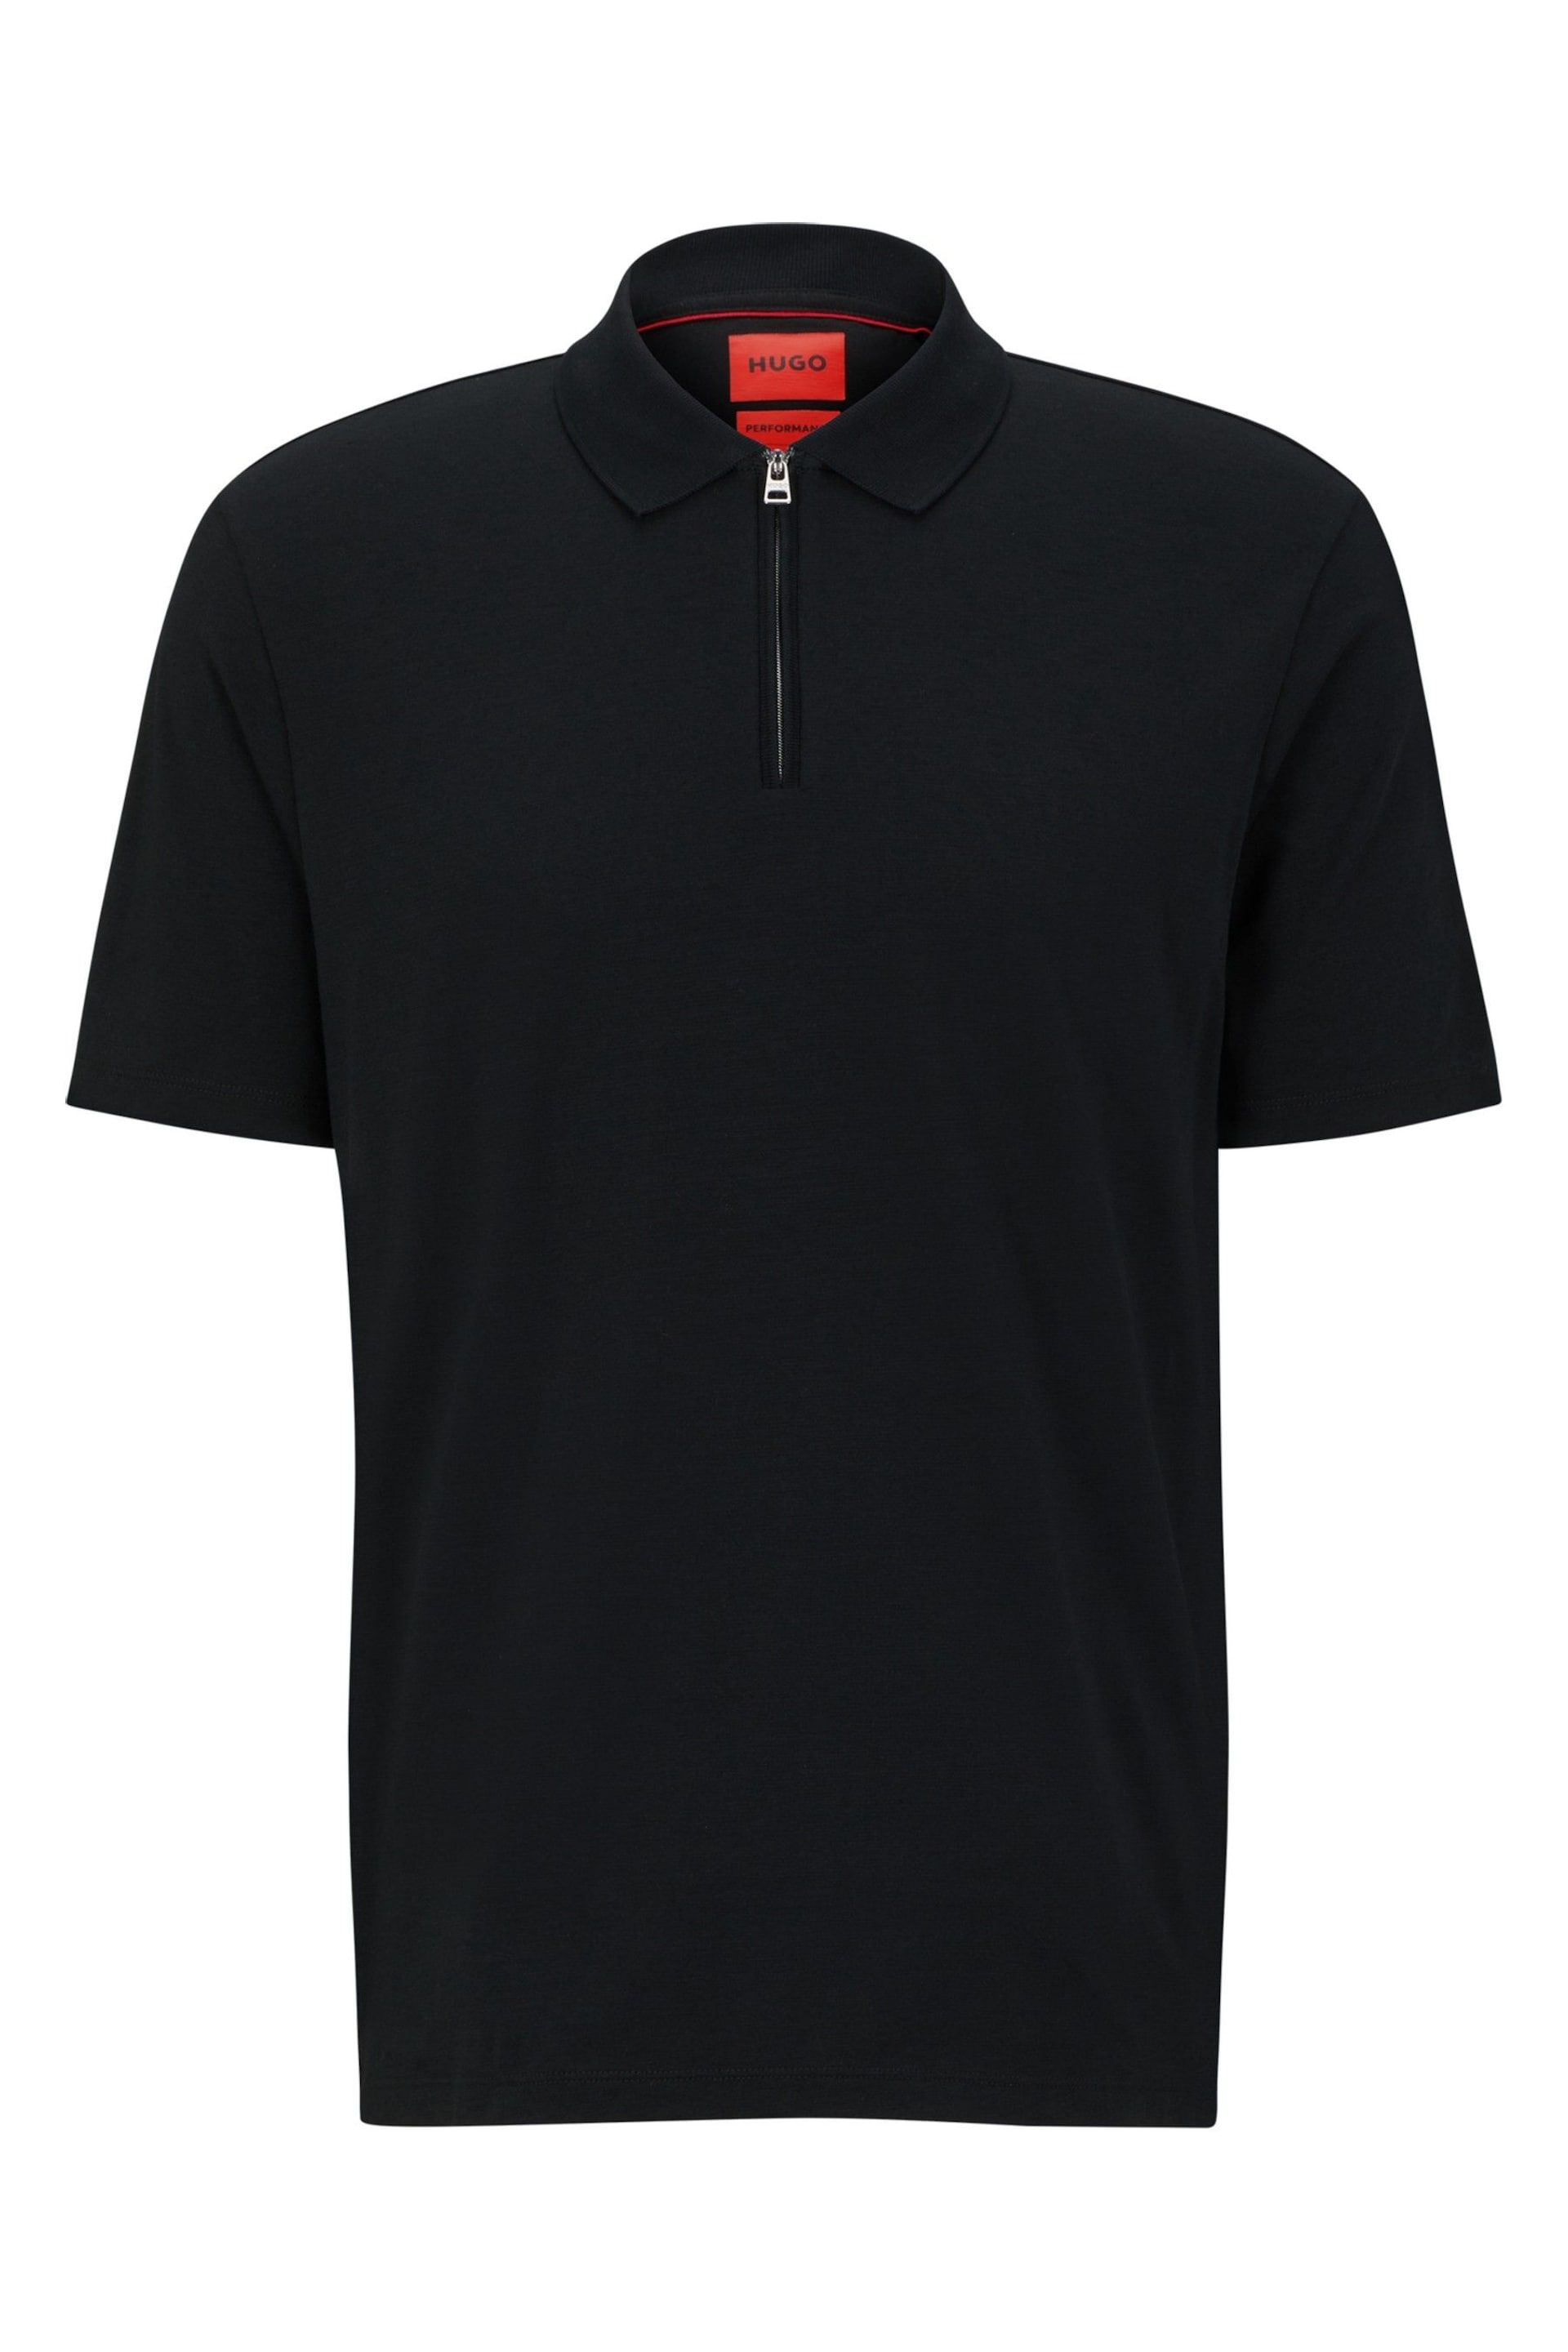 HUGO Zip Neck Polo Shirt - Image 5 of 5